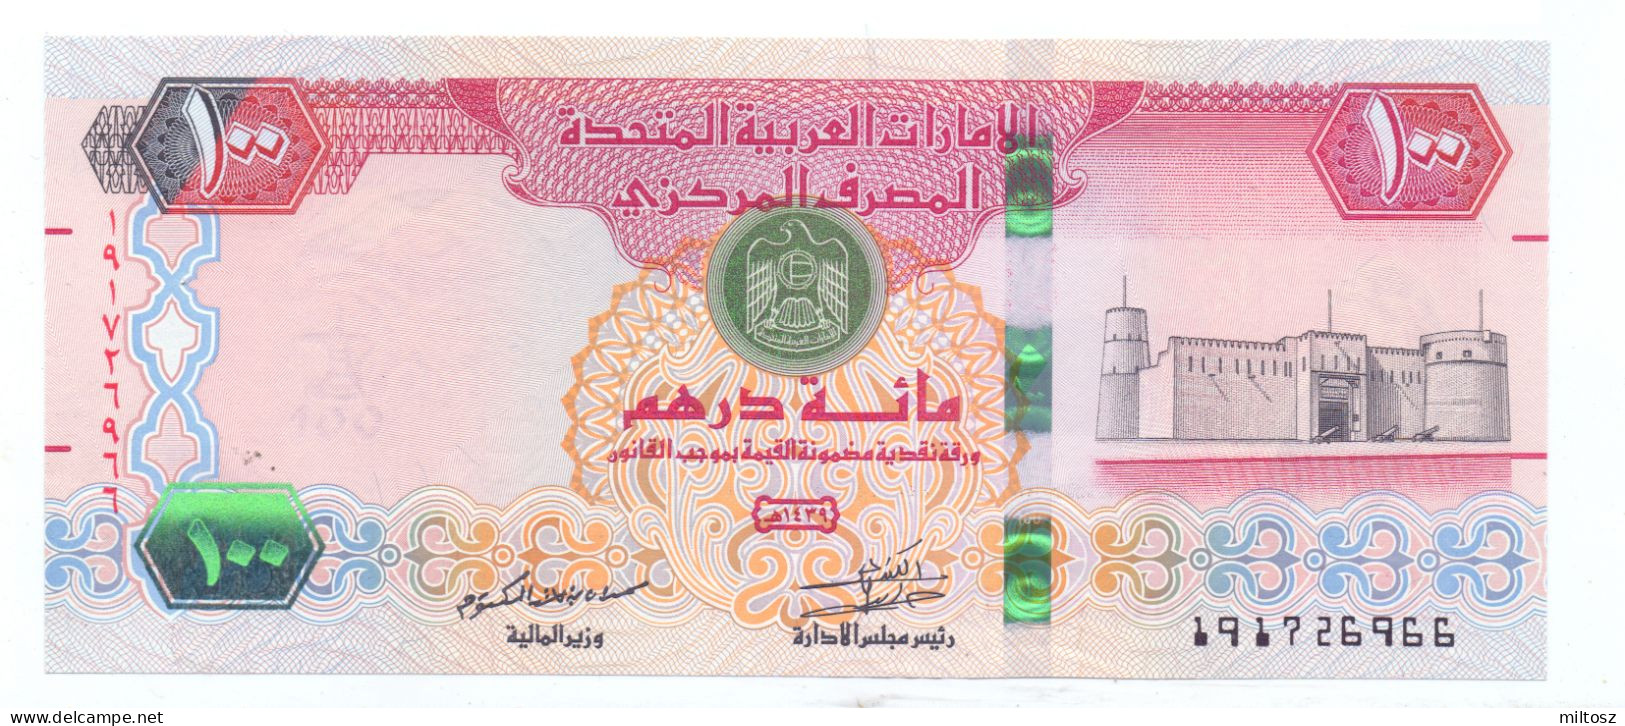 United Arab Emirates 100 Dirhams 2008/1429 - Emiratos Arabes Unidos